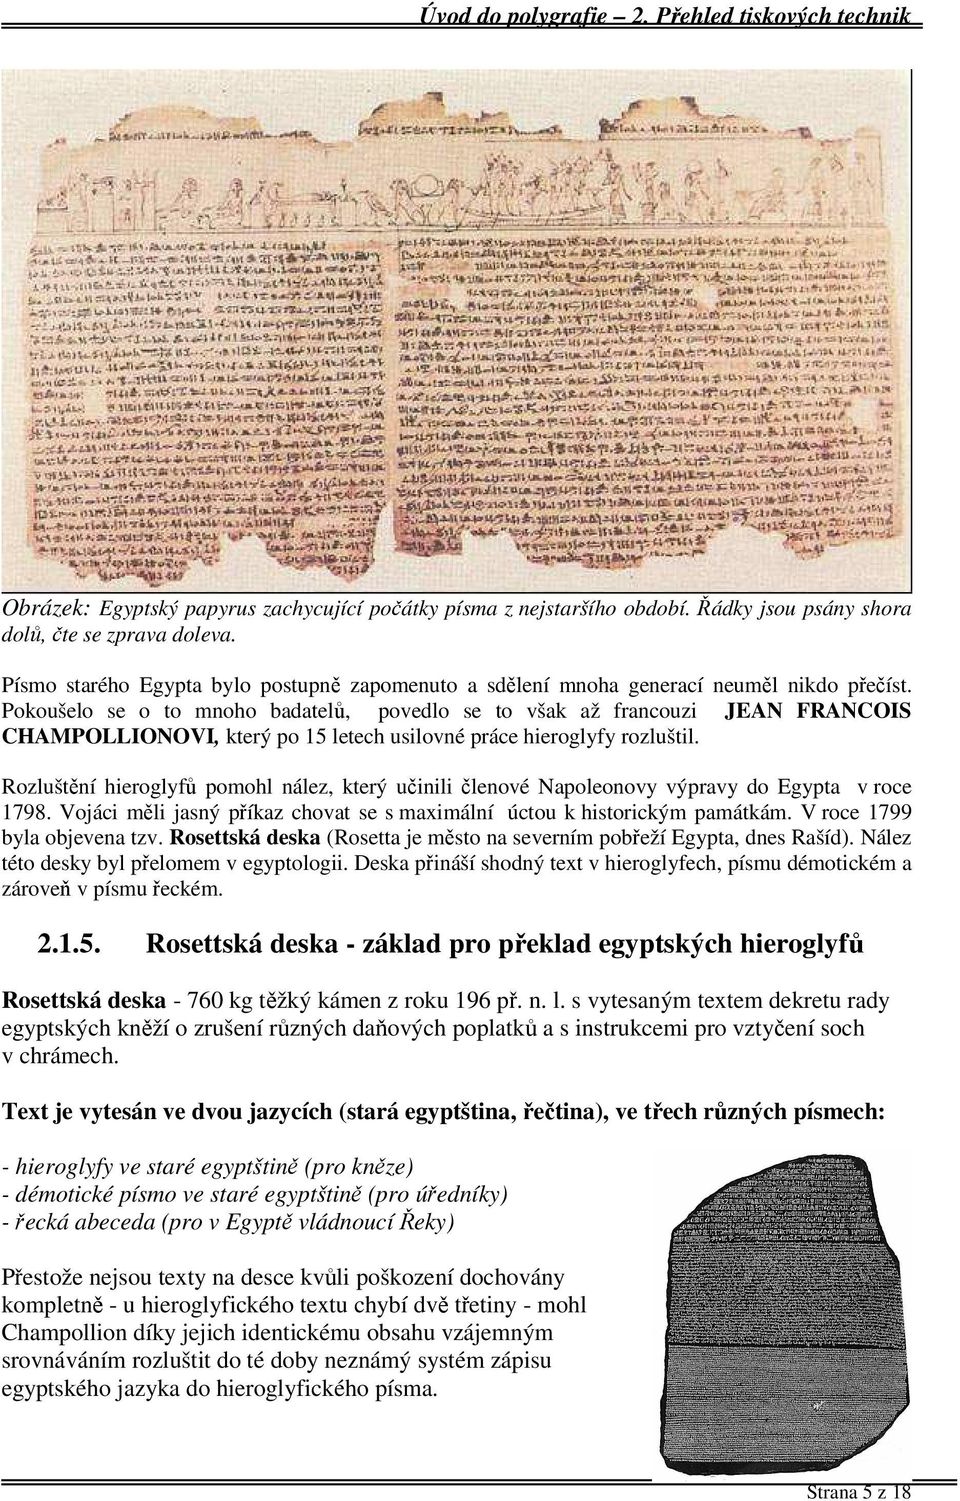 Pokoušelo se o to mnoho badatelů, povedlo se to však až francouzi JEAN FRANCOIS CHAMPOLLIONOVI, který po 15 letech usilovné práce hieroglyfy rozluštil.